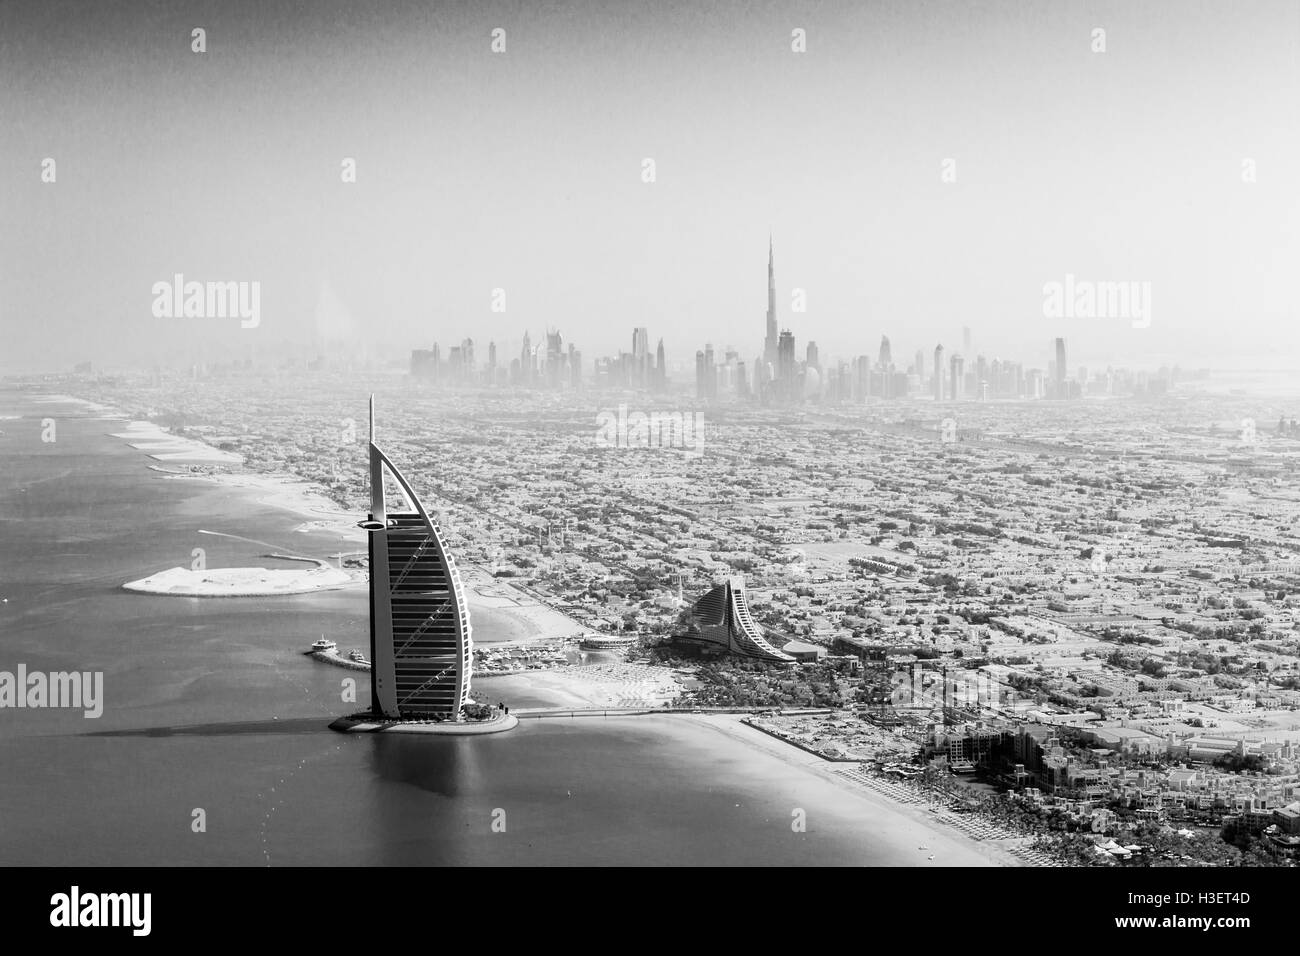 Dubaï, Émirats arabes unis - 17 octobre 2014 : La célèbre Burj Al Arab Hotel Dubai skyline et prises d'un hydravion dans un noir Banque D'Images